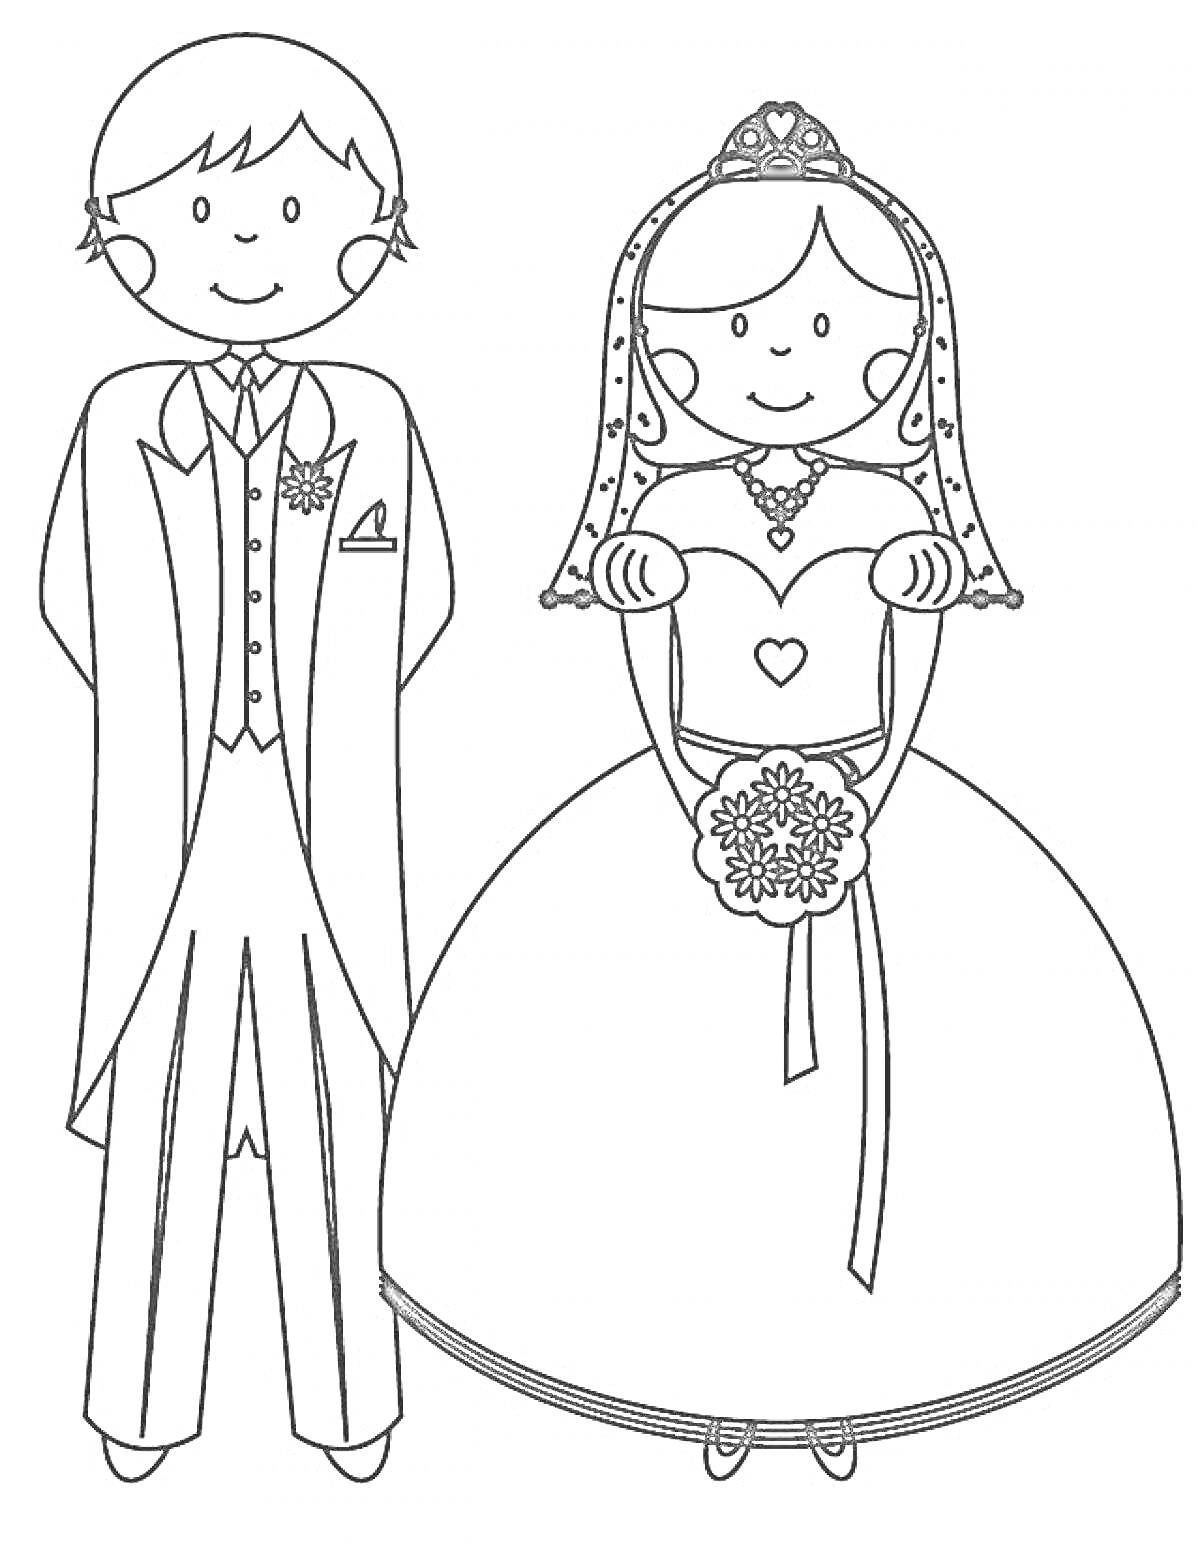 Раскраска Жених и невеста на свадьбе, стоящие вместе. Жених в смокинге, невеста в свадебном платье с букетом.